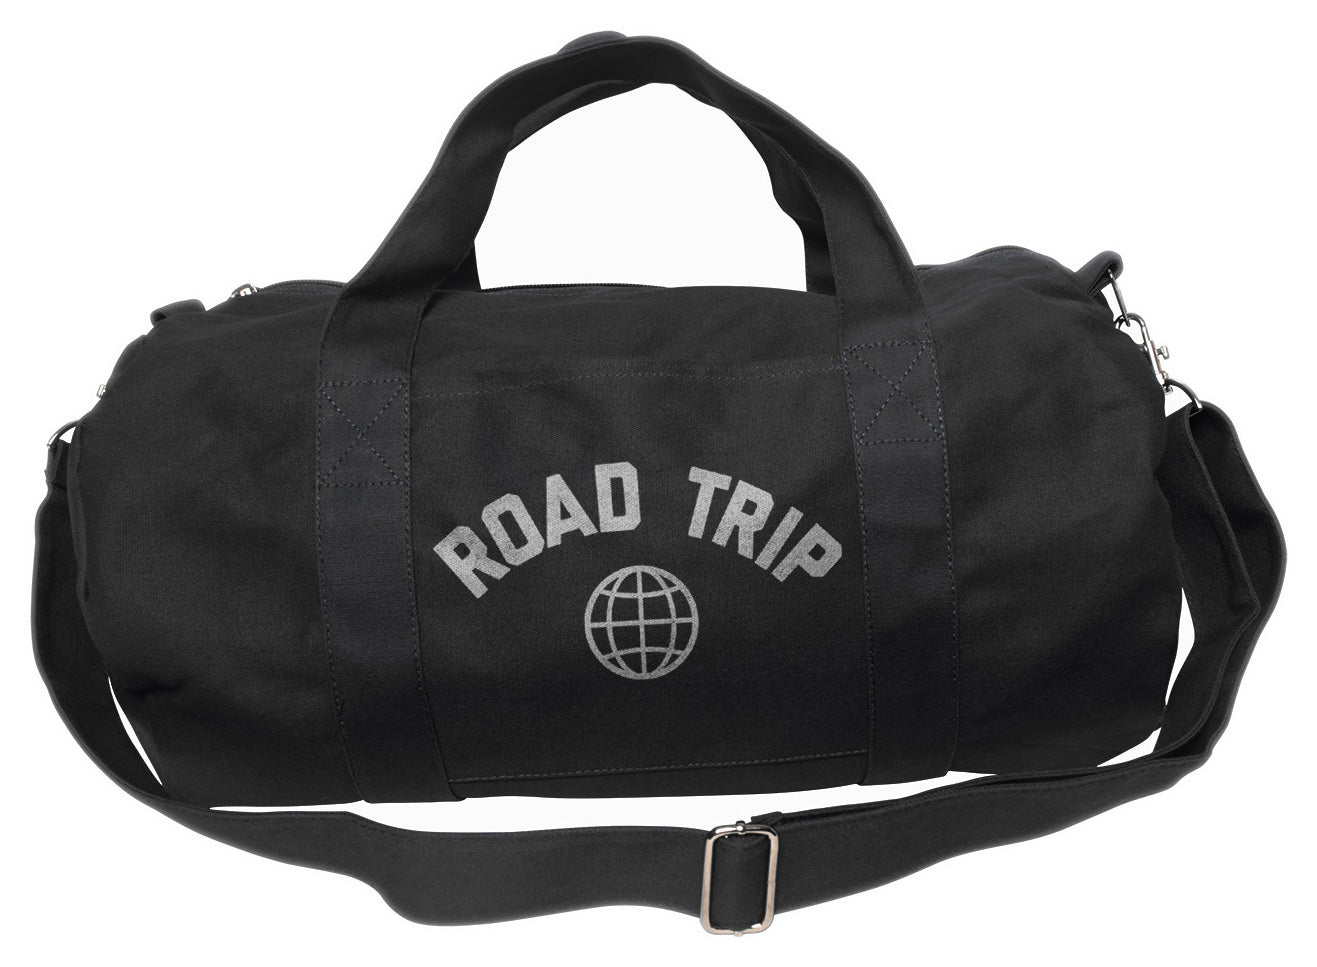 Road Trip Duffel Bag